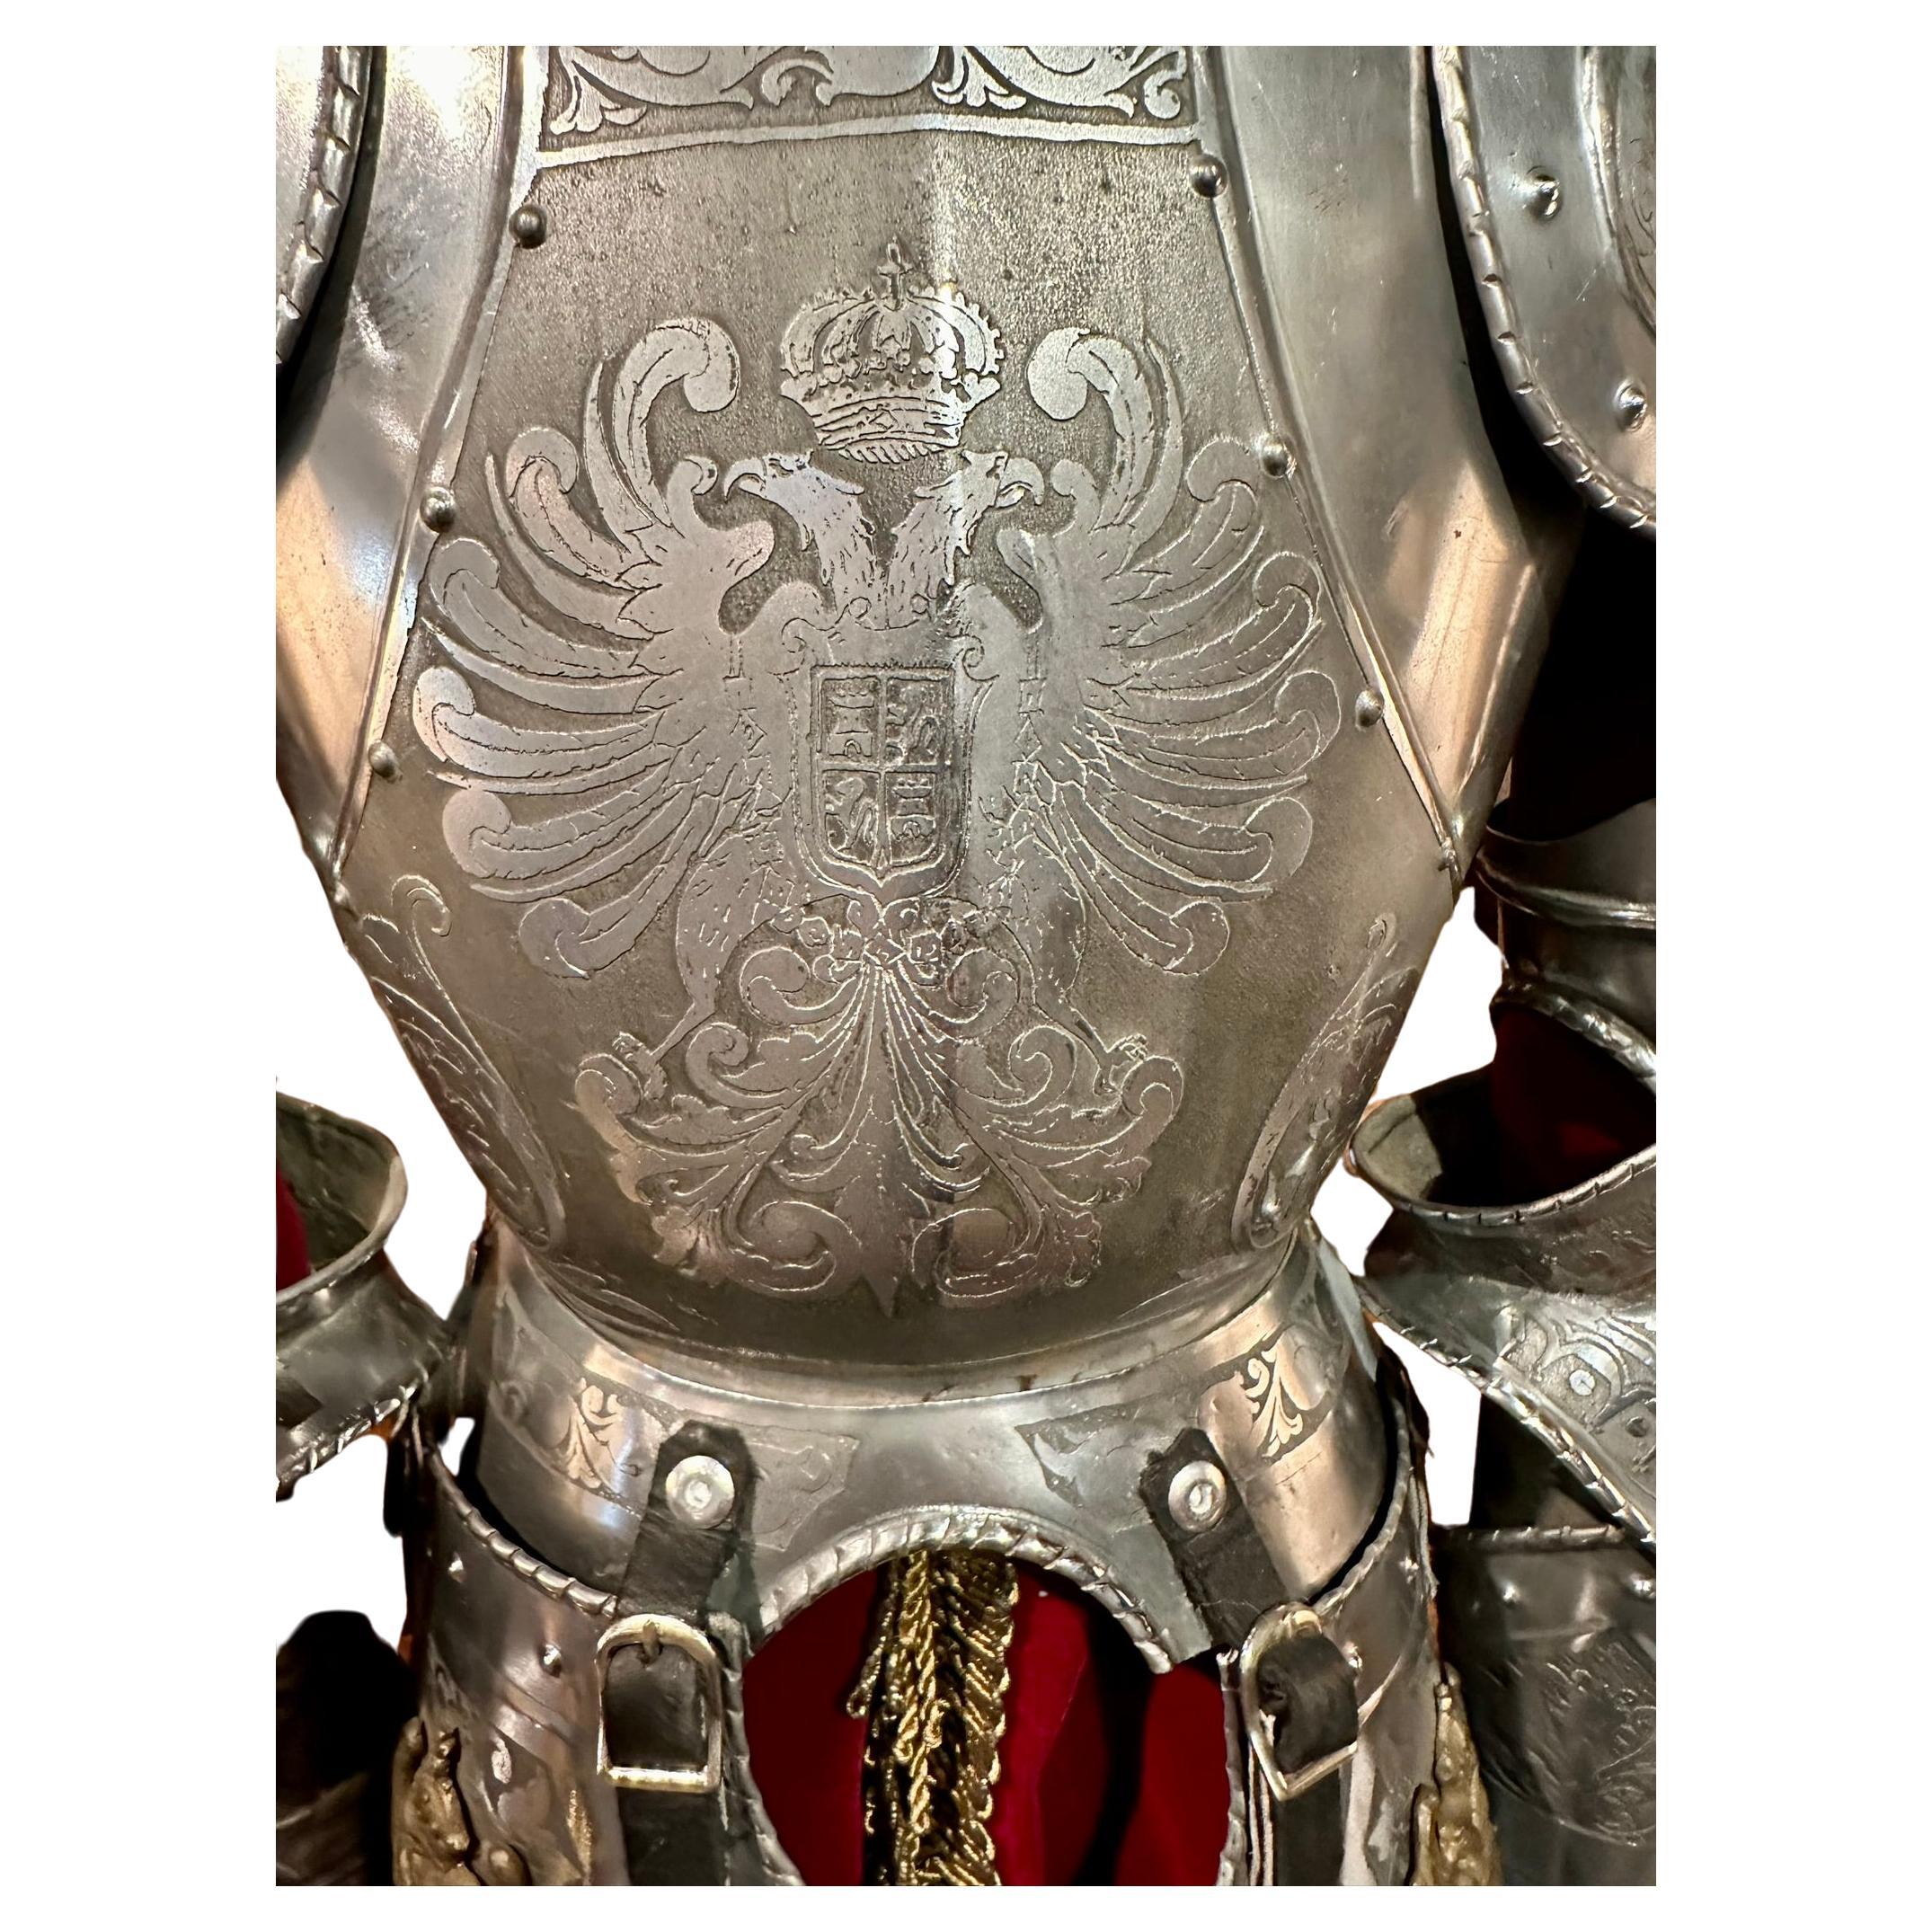 Hand-Made Miniatur Modell Cavalier Wappen, Scharnier mittelalterlichen Ritter Rüstung (Stahl)